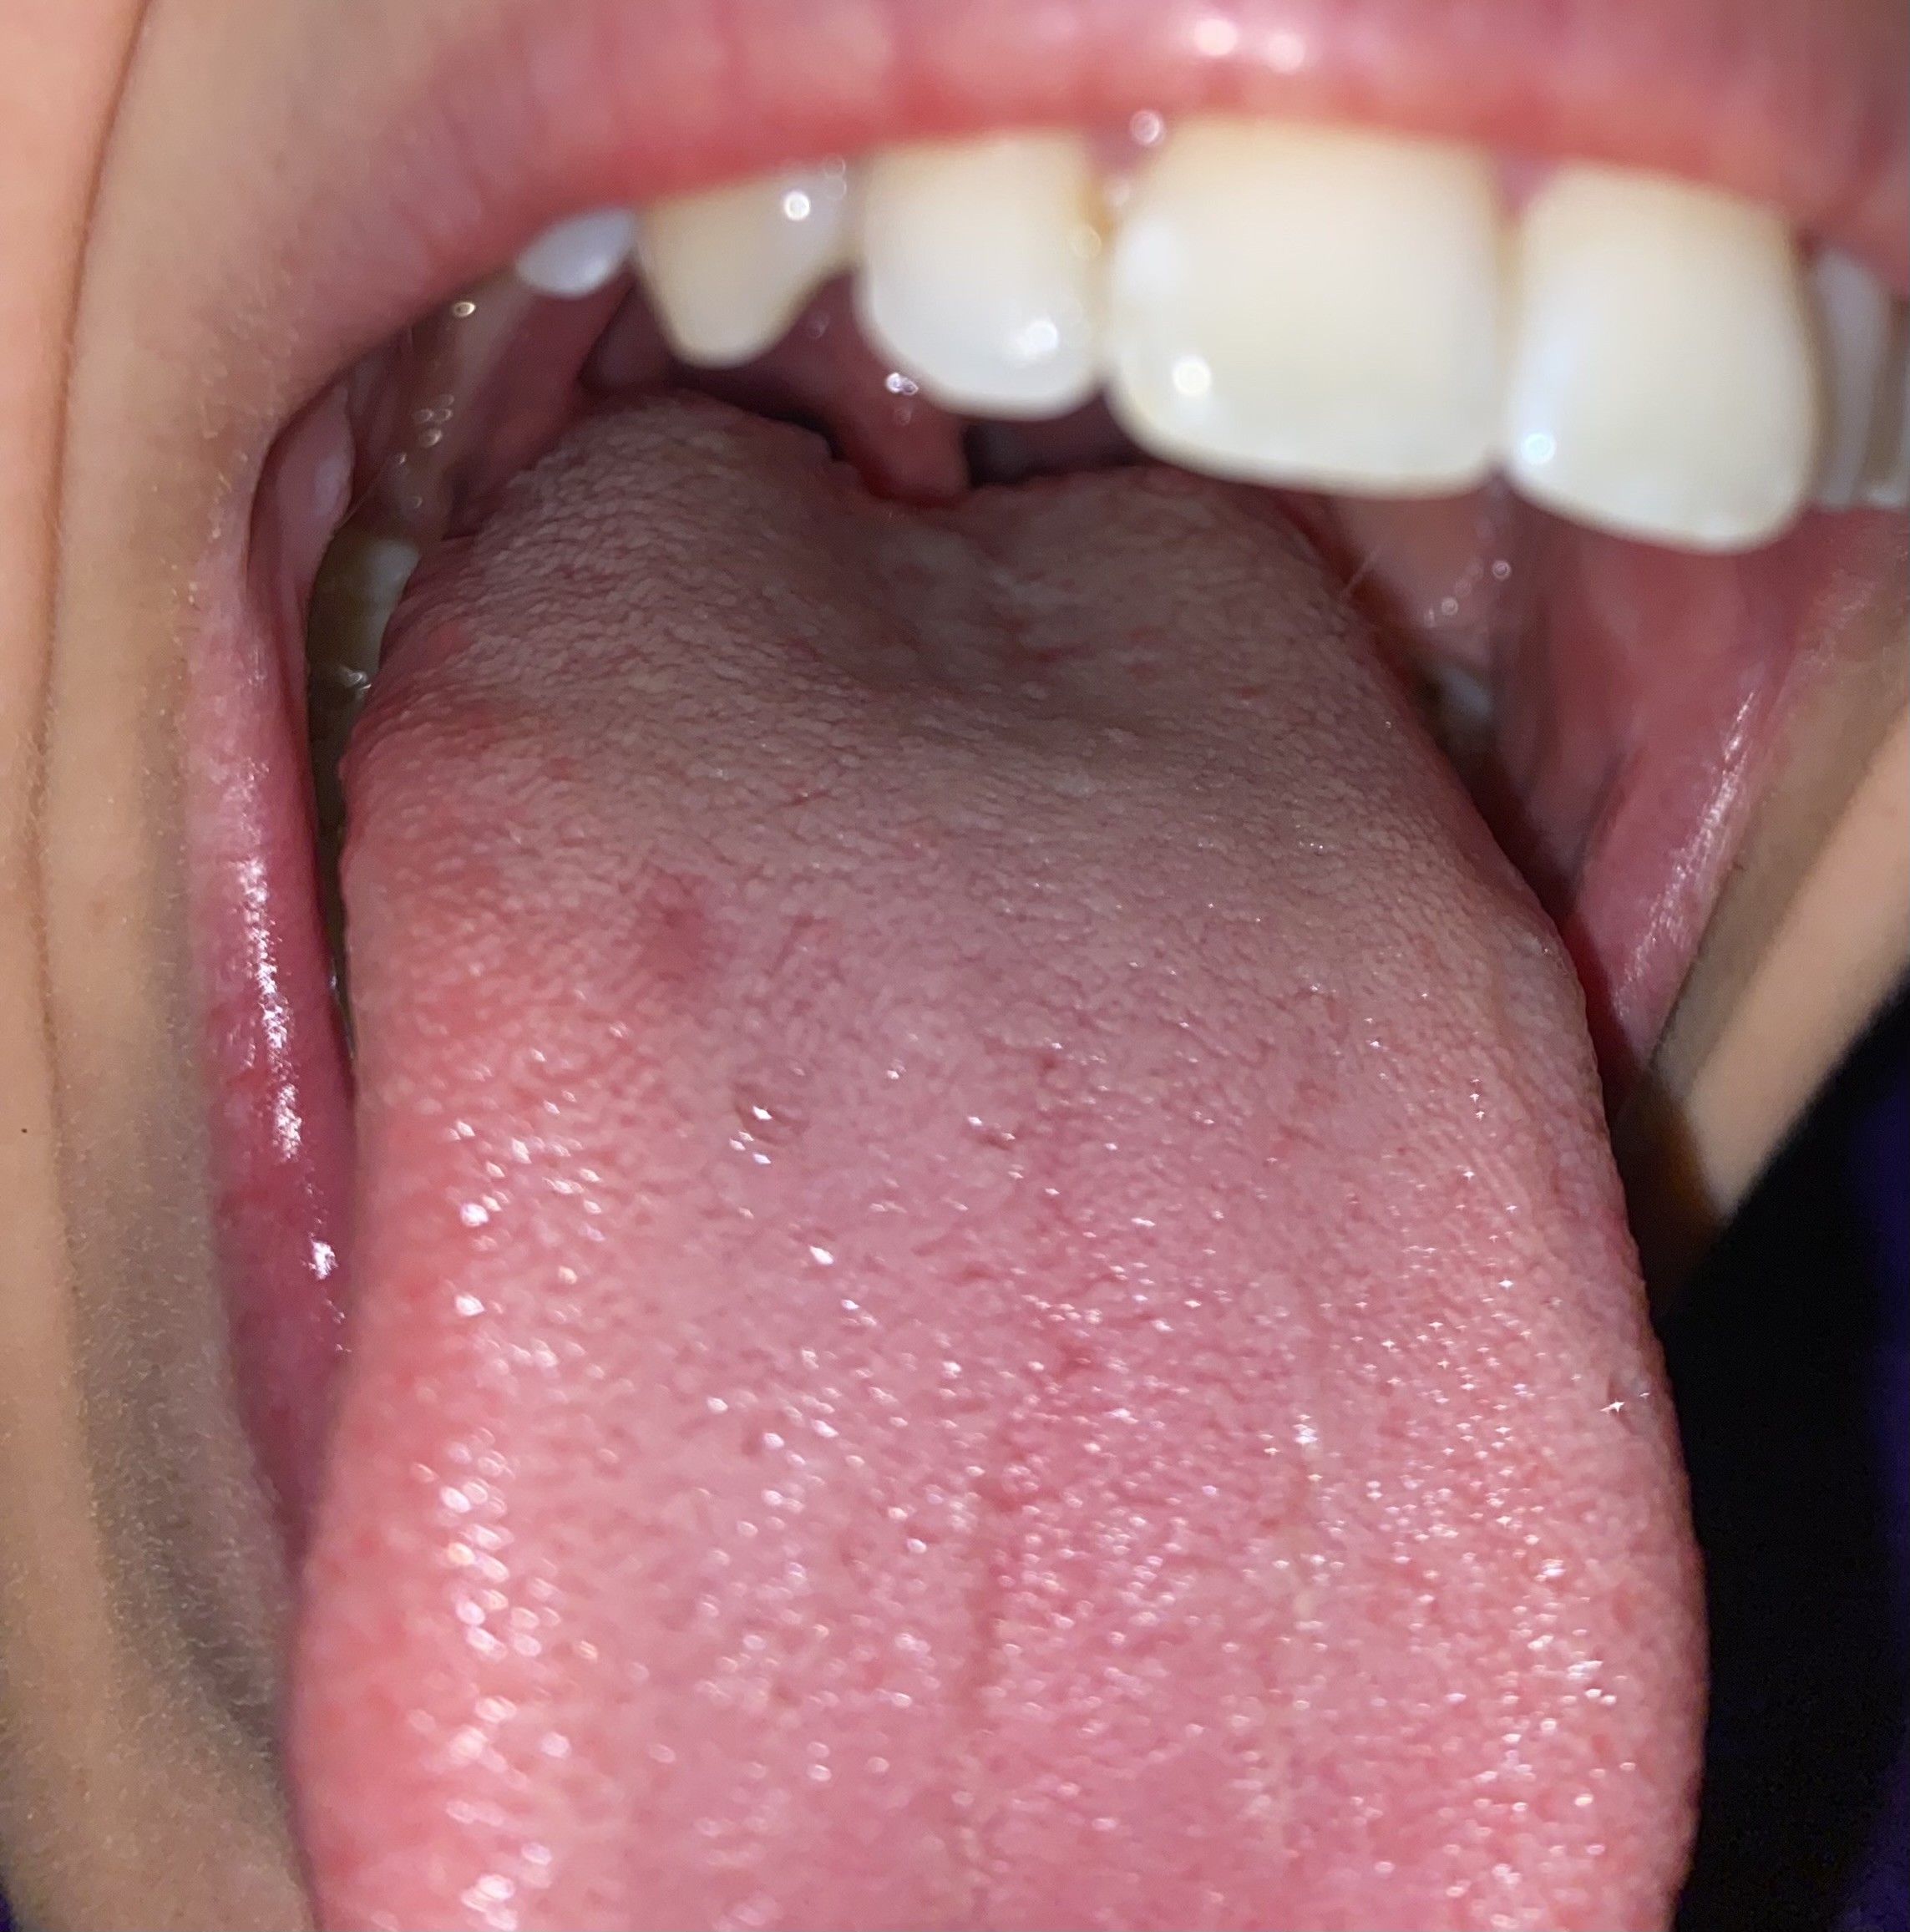 Macchia rossastra indolore sul dorso della lingua